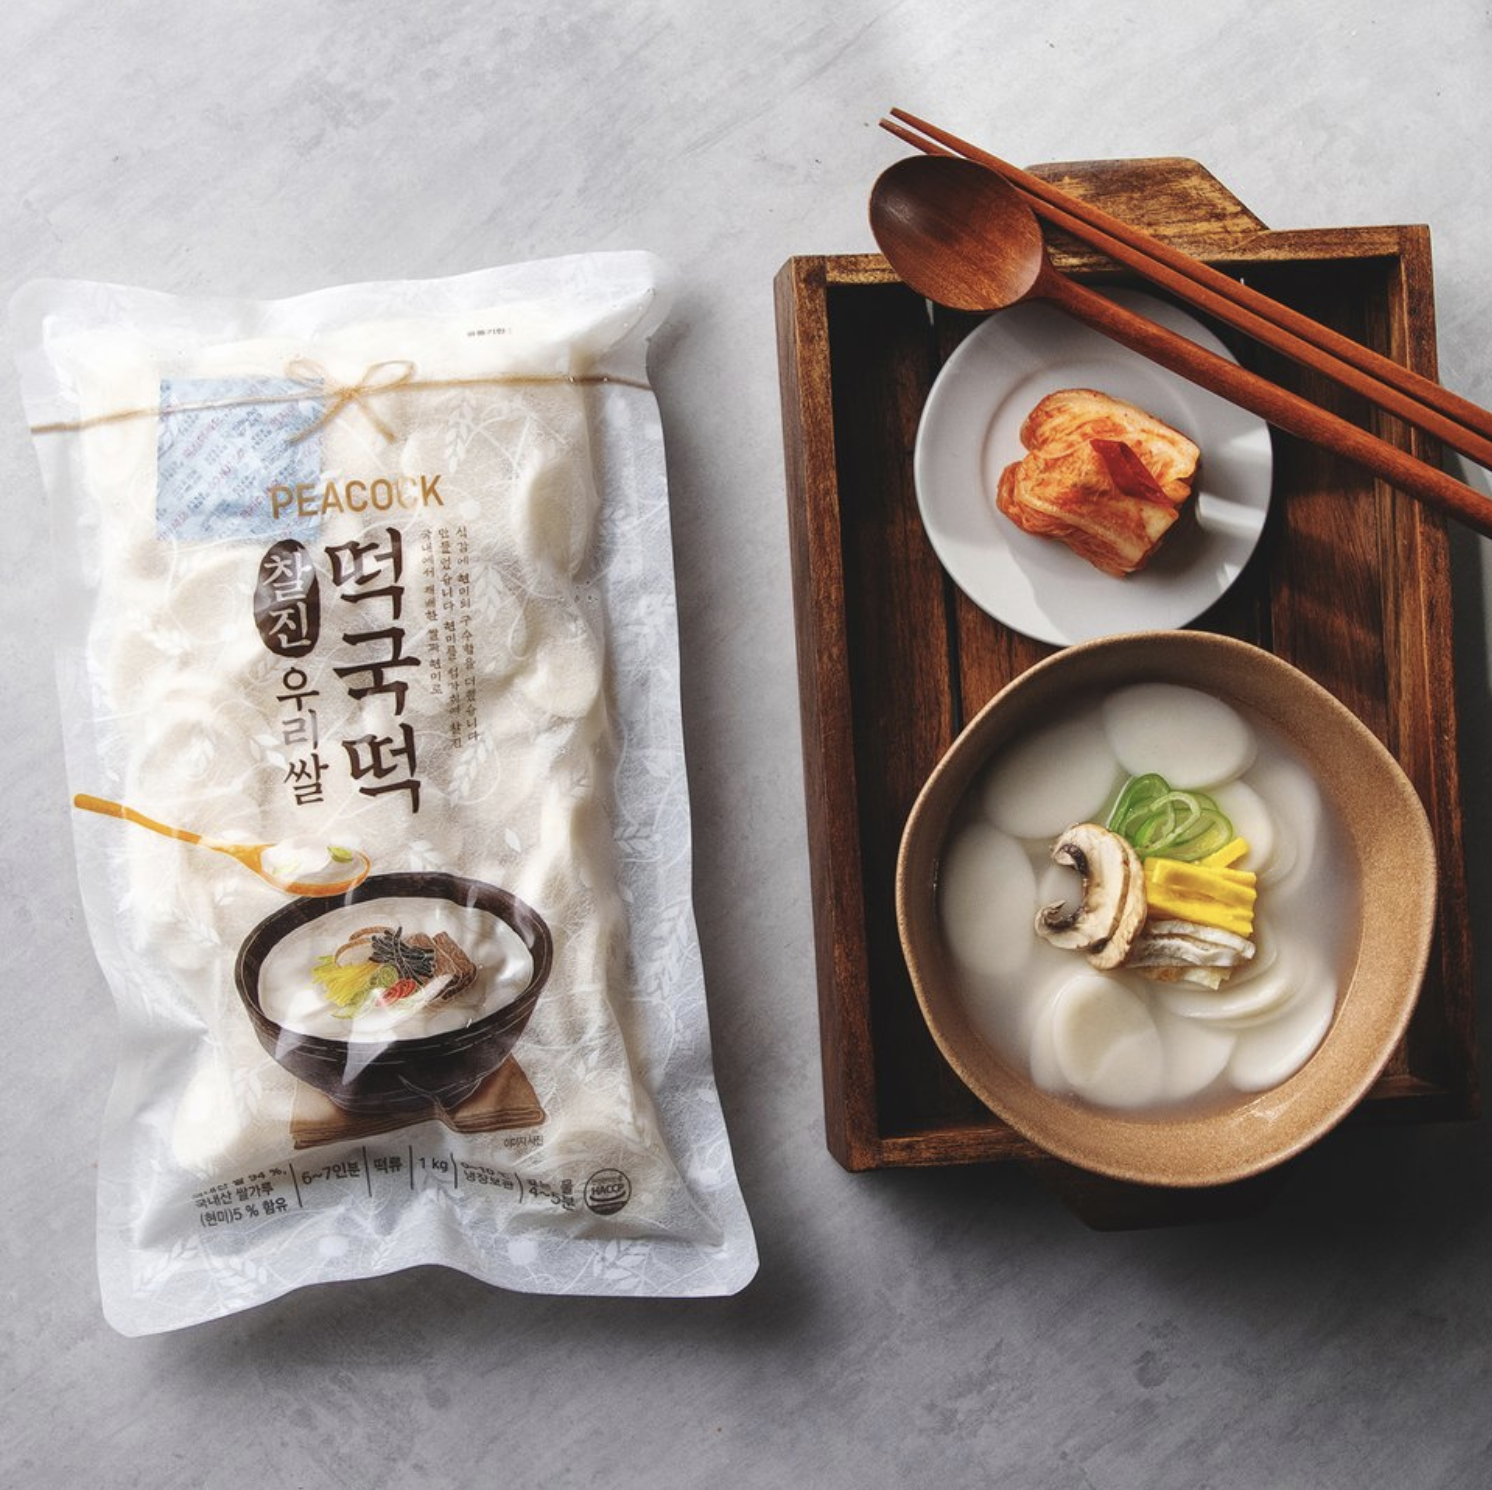 韓國食品-[Peacock] Tteokguk Sliced Rice Cake 1kg